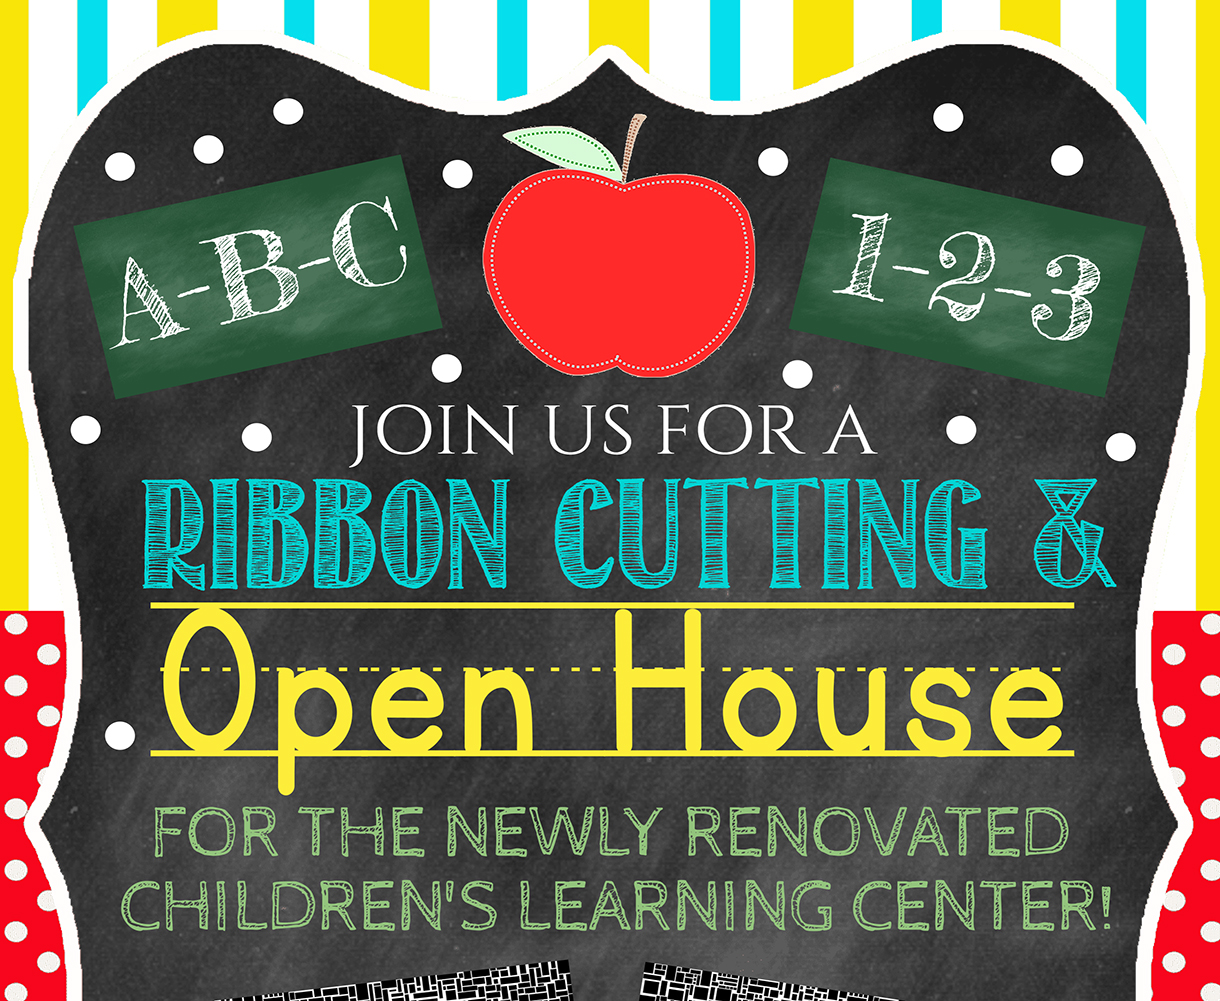 The Children's Center Open House is September 28.